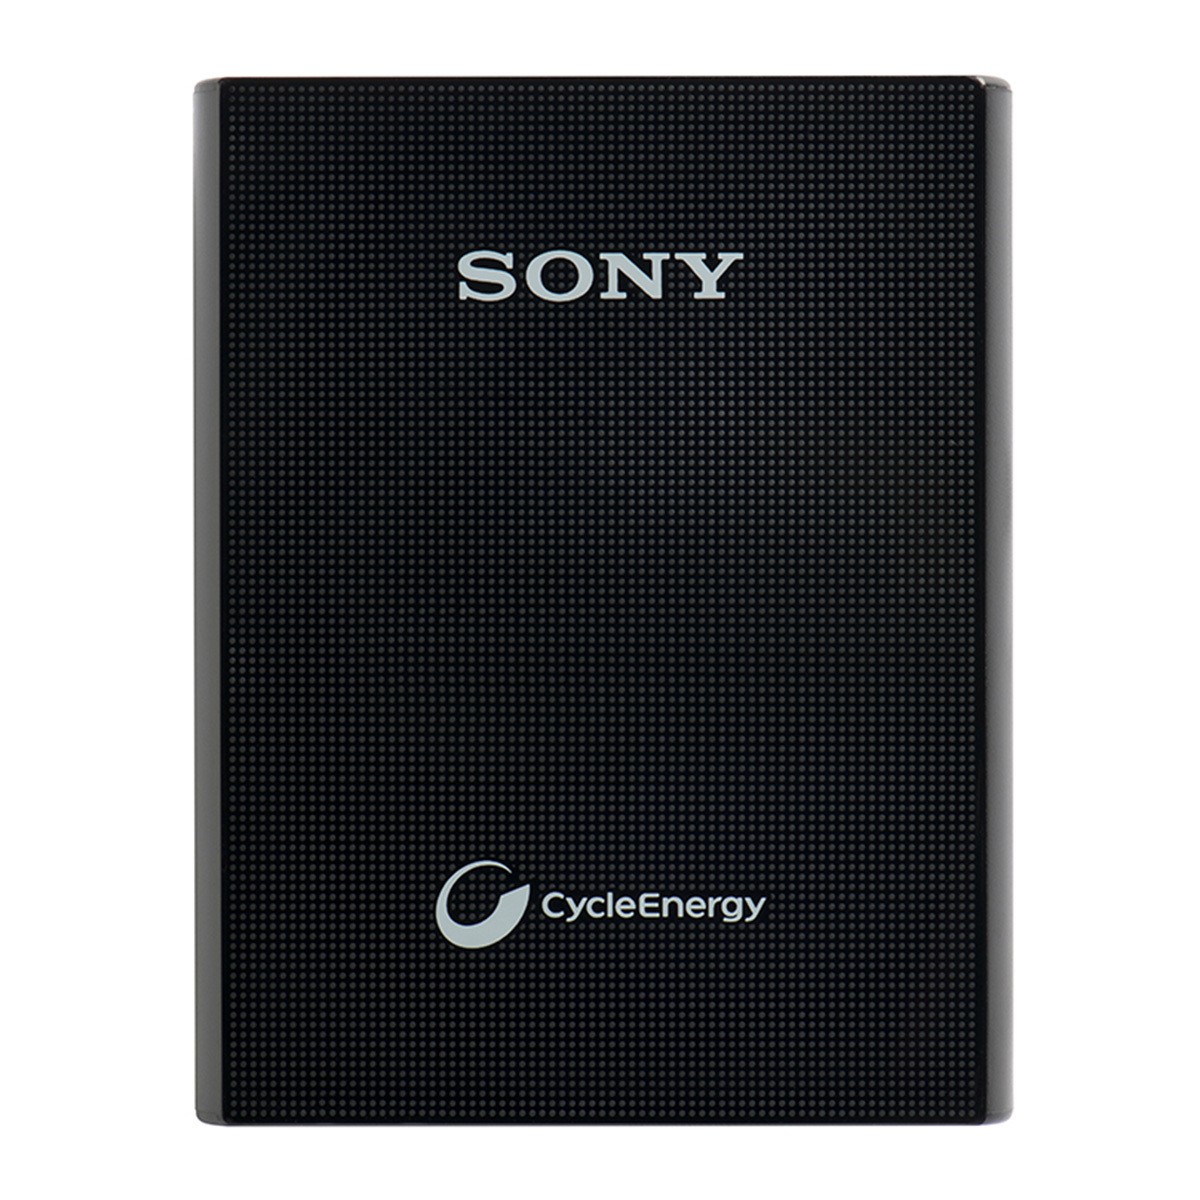 Bateria externa Sony (R$ 74,90) (Foto: Divulgação)